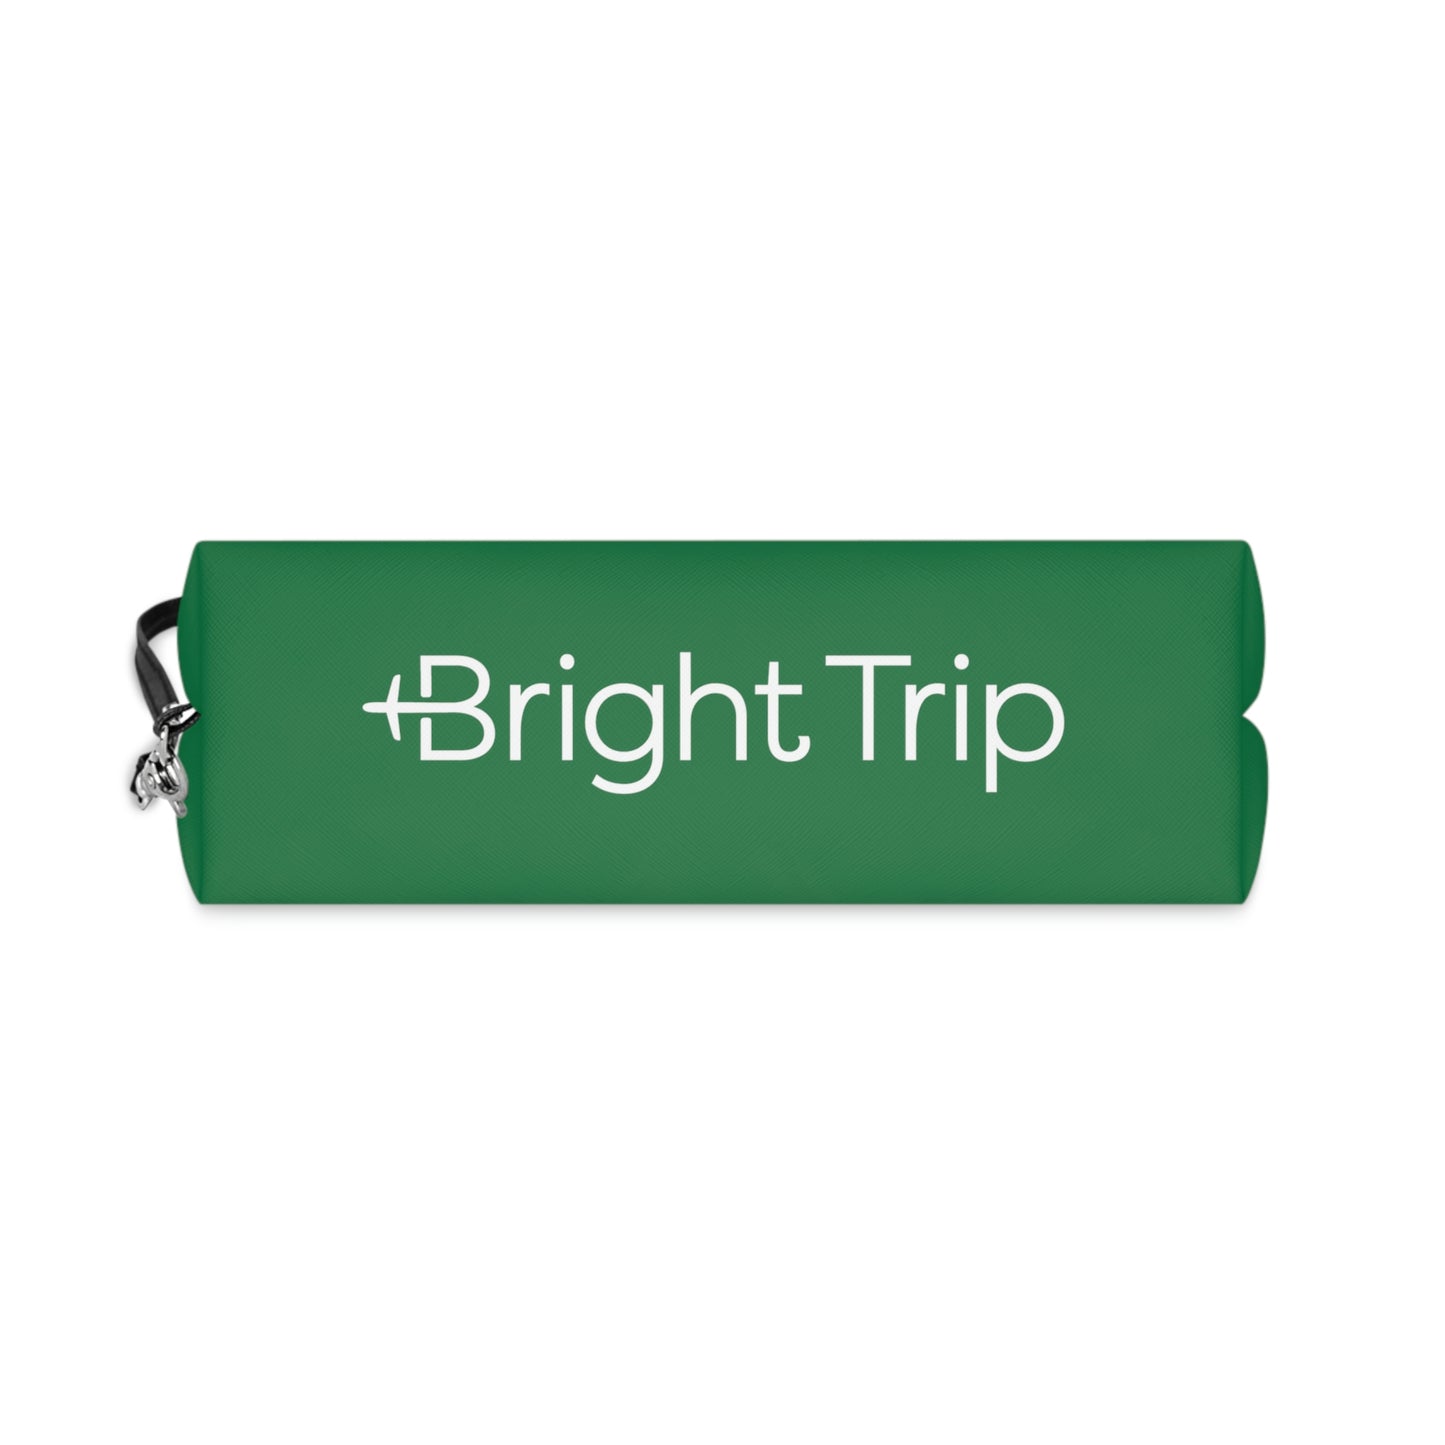 Bright Trip: Makeup Bag